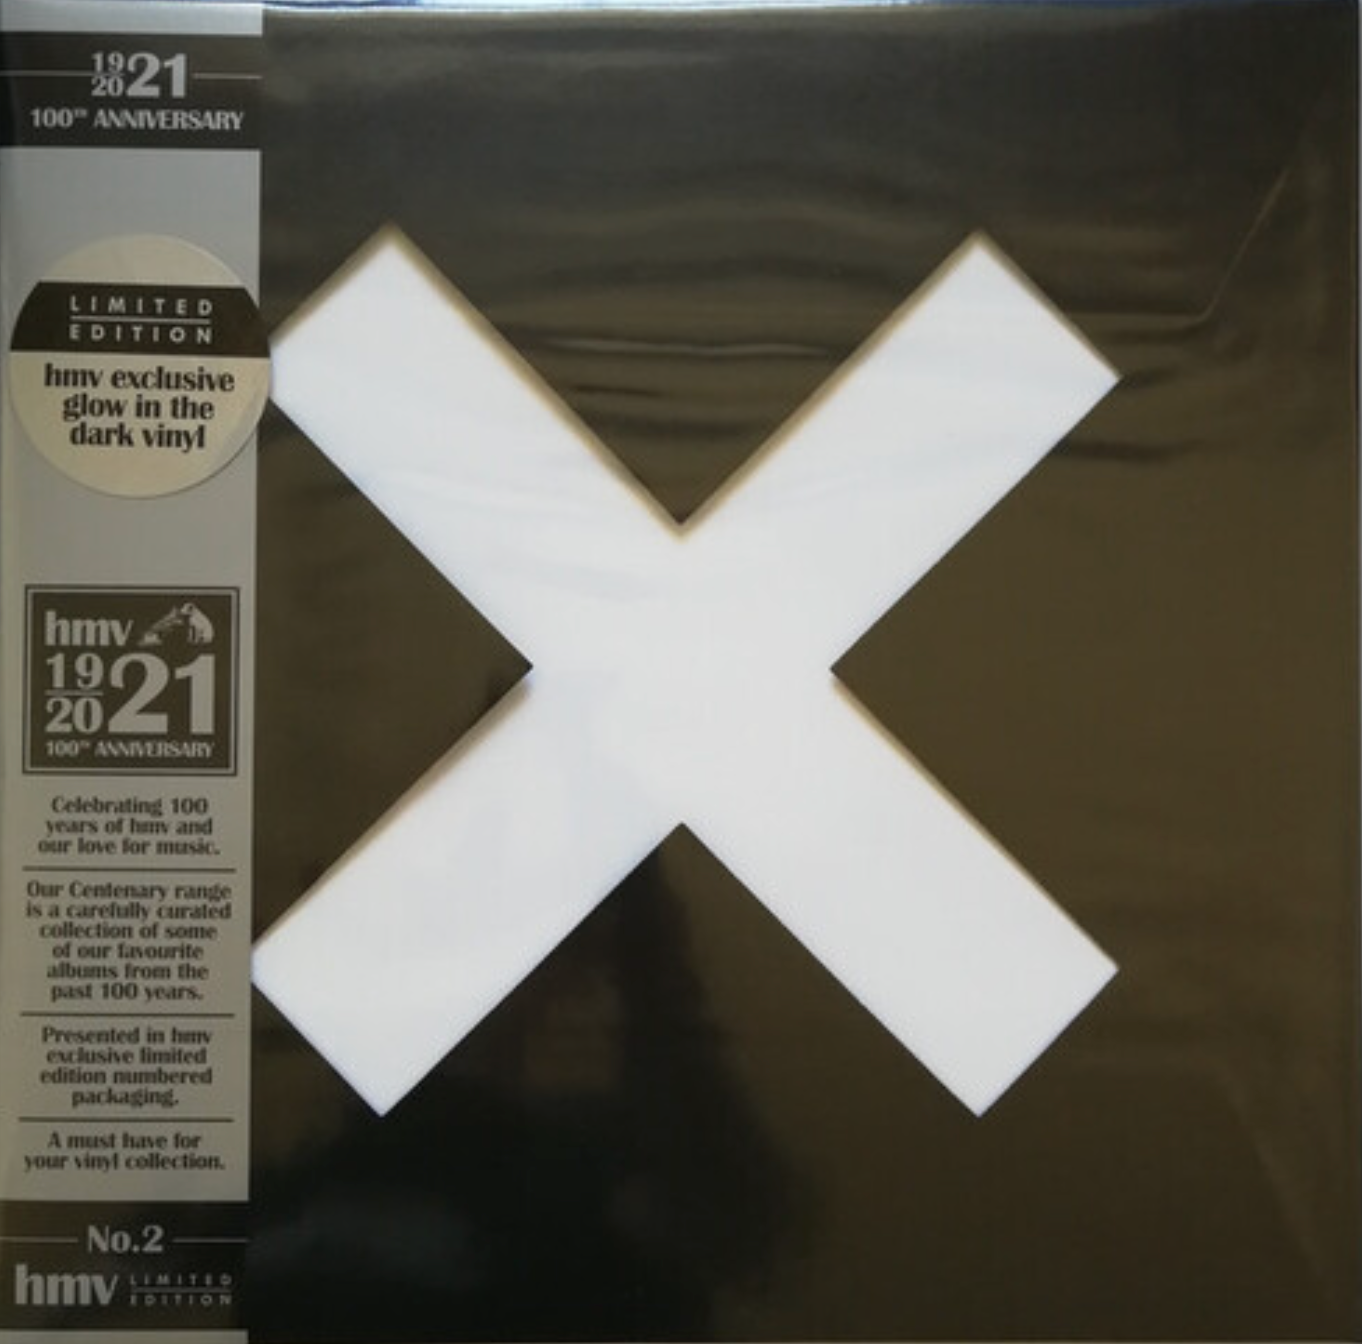 xx (Limited Edition HMV 100th Anniversary Glow in The Dark Vinyl)